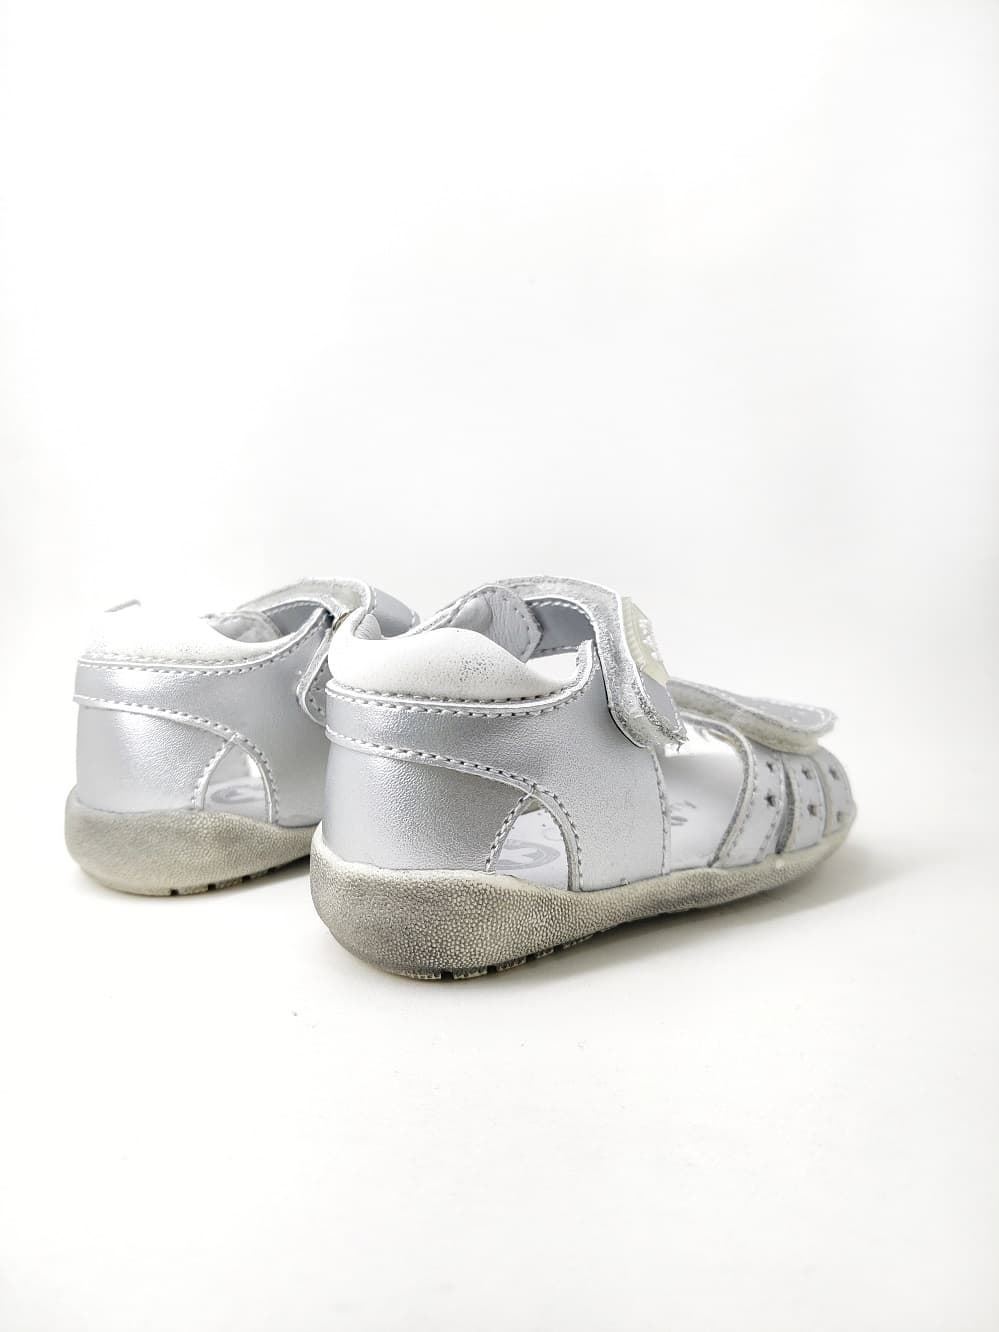 Sandalias Plata para bebé niña con velcro - Imagen 3